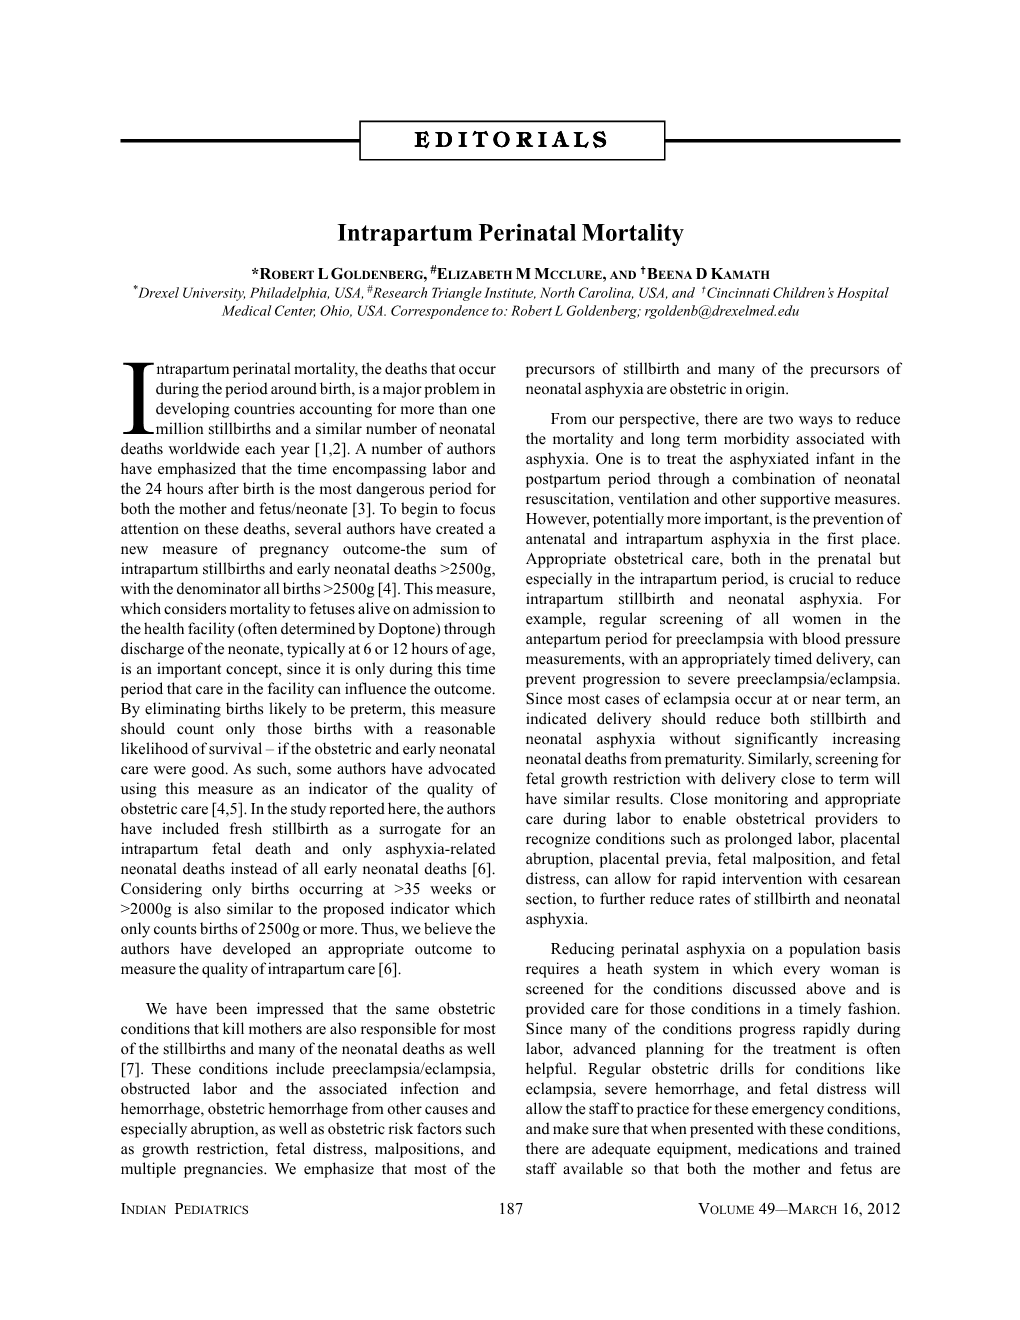 Intrapartum Perinatal Mortality